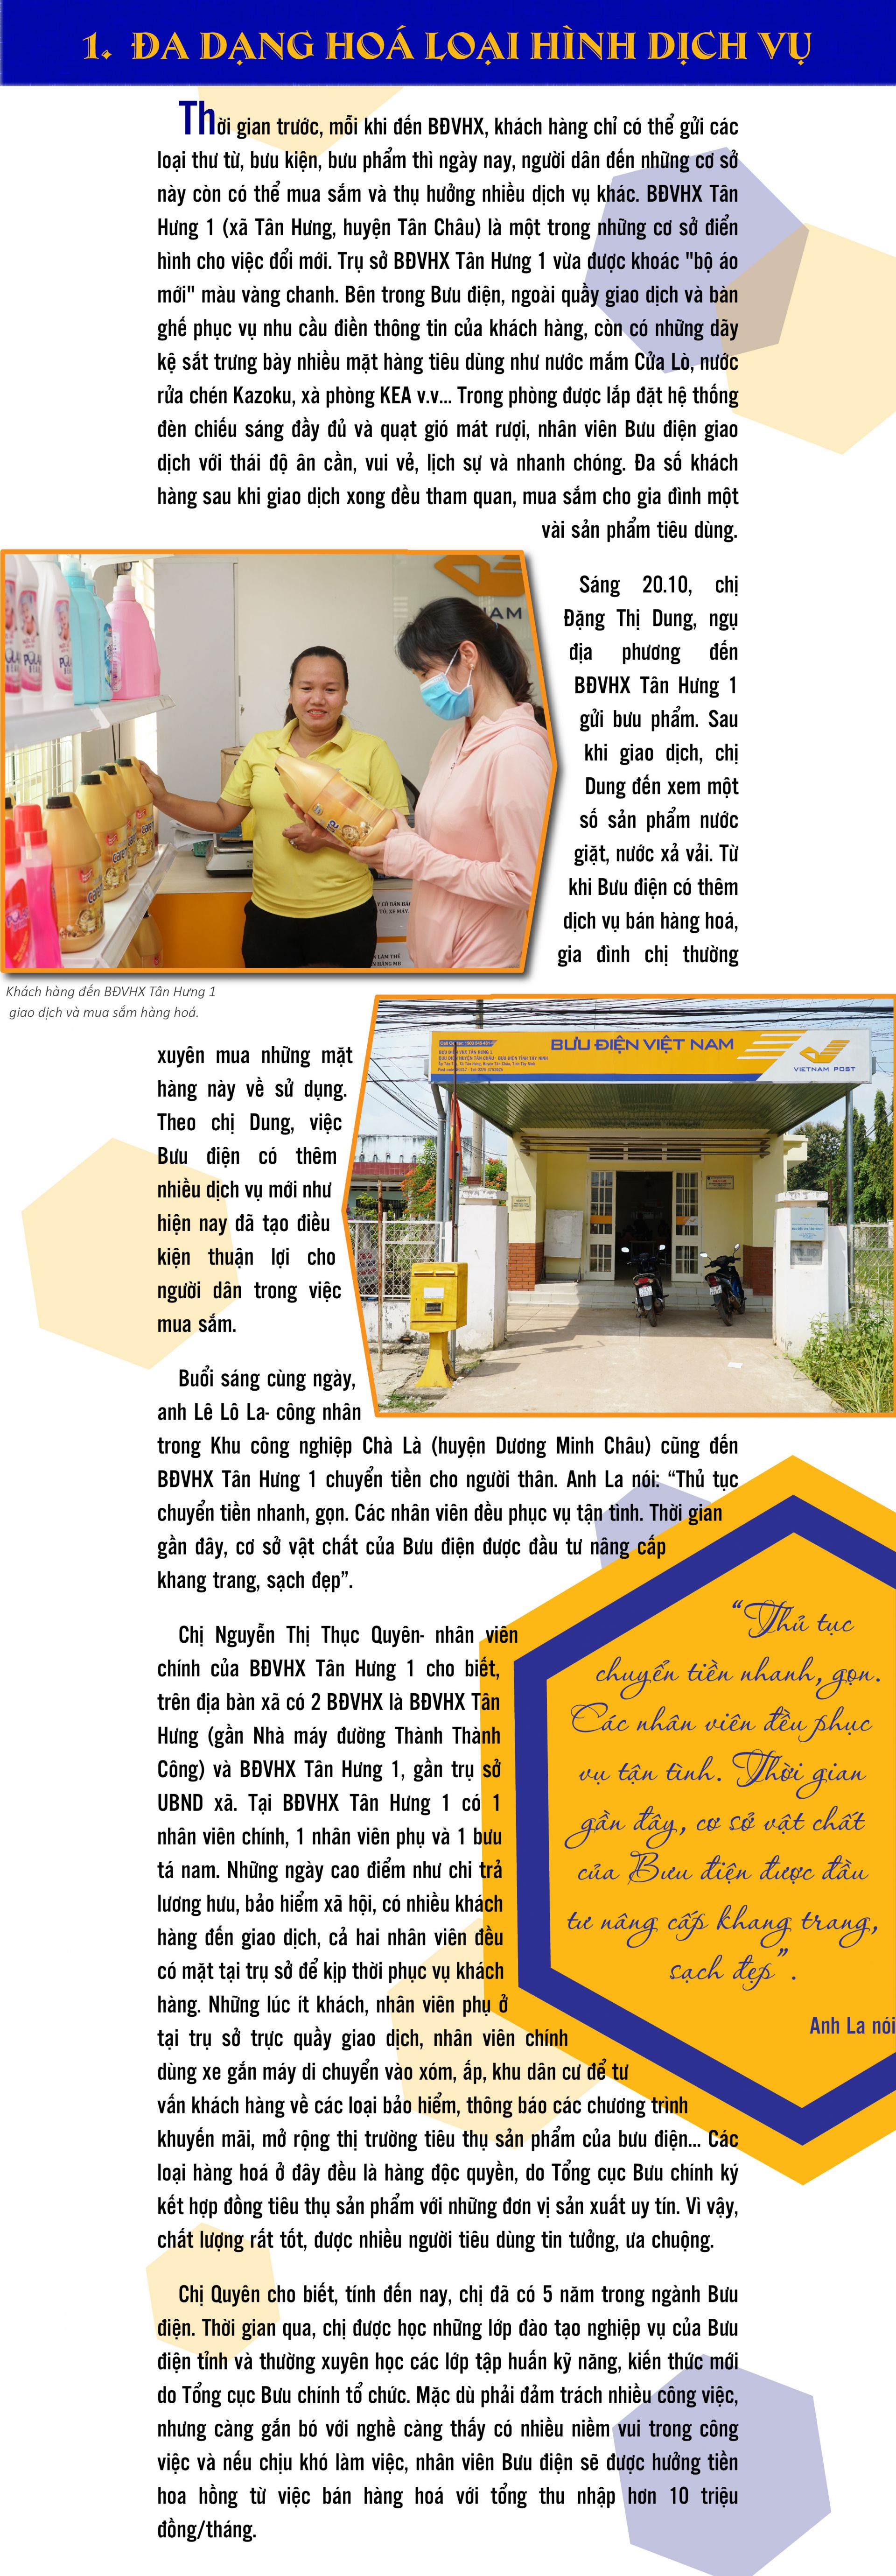 Bưu điện văn hoá xã-Từng bước thay đổi - Báo Tây Ninh Online: chuyển đổi dịch vụ
Bạn muốn tìm hiểu về quá trình chuyển đổi dịch vụ của Bưu điện để nâng cao trải nghiệm khách hàng? Hãy đọc ngay bài viết \